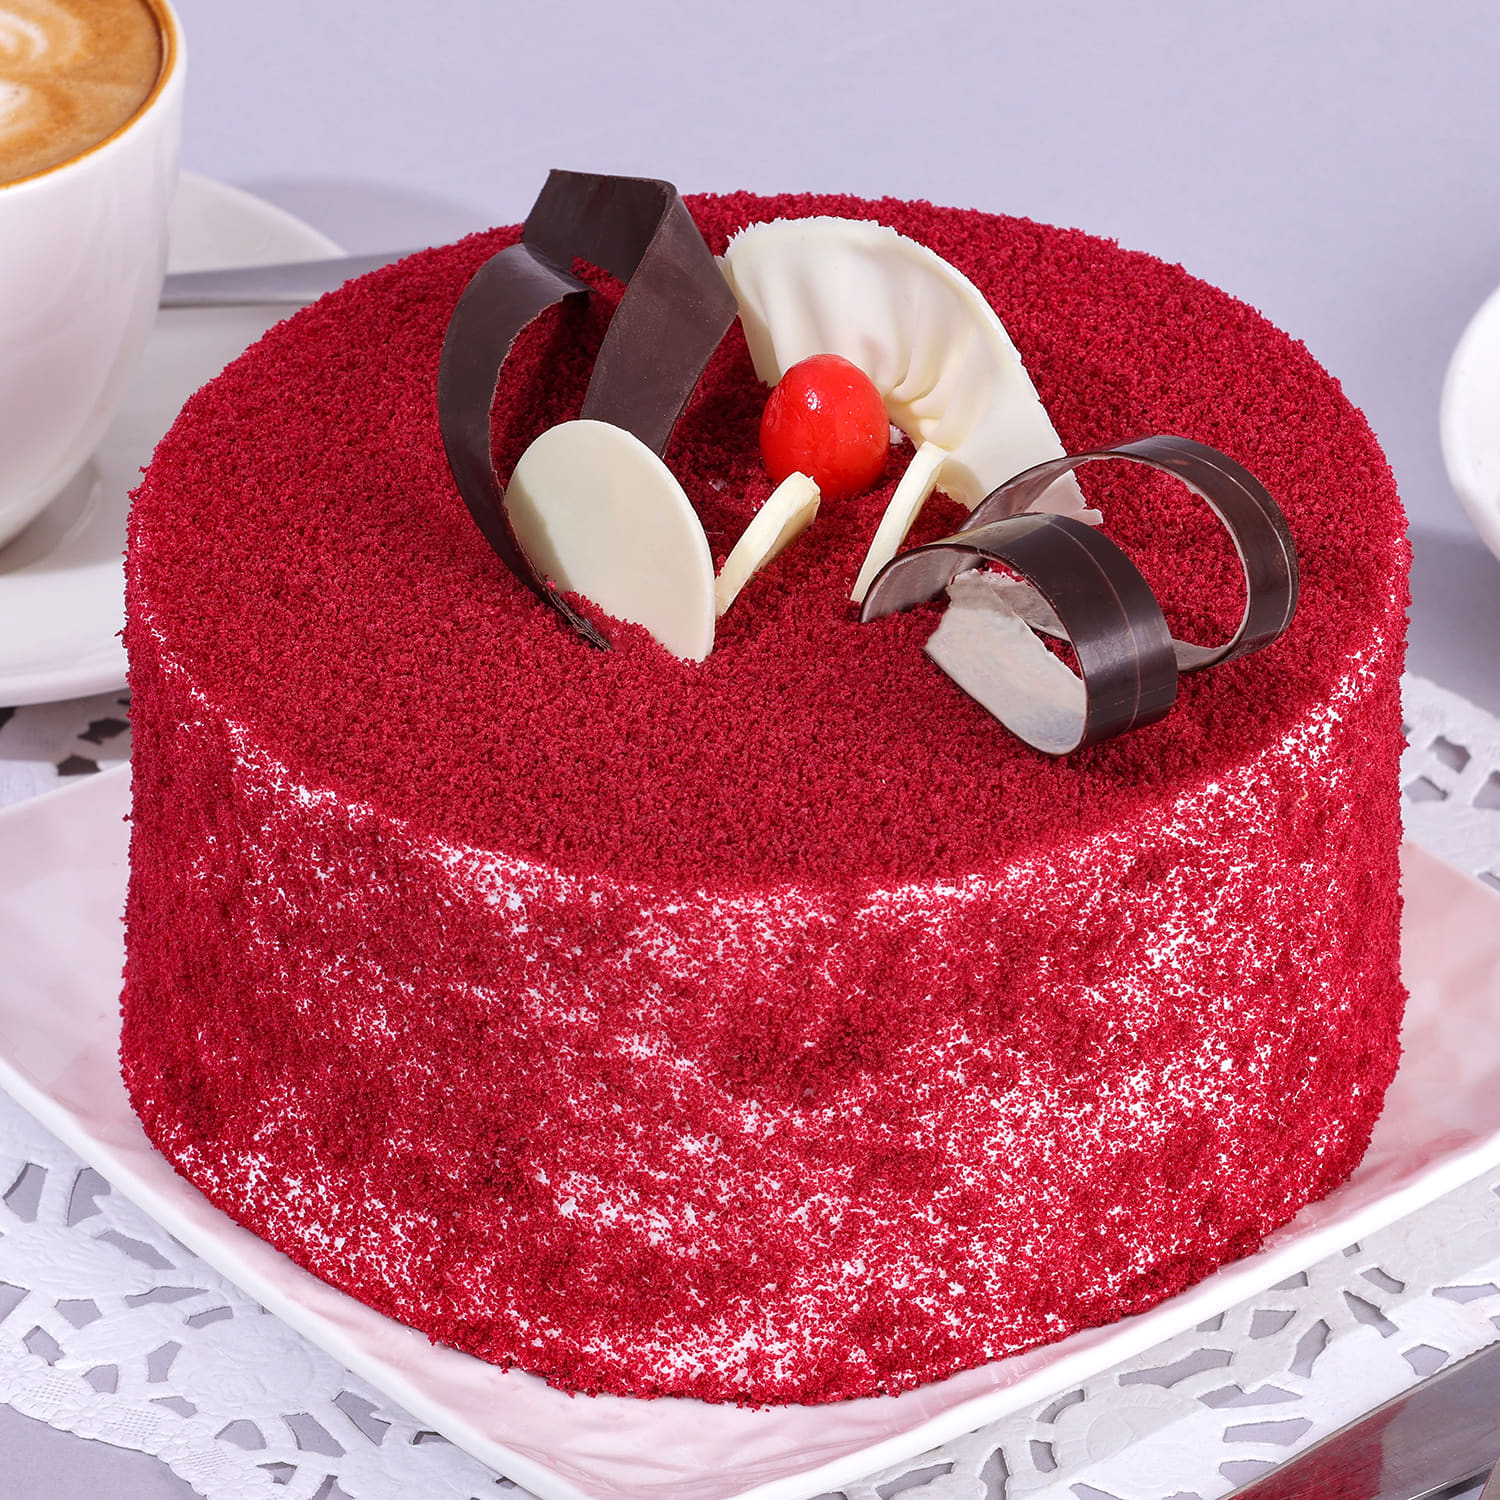 Red Rose Layer Cake | We Take The Cake®